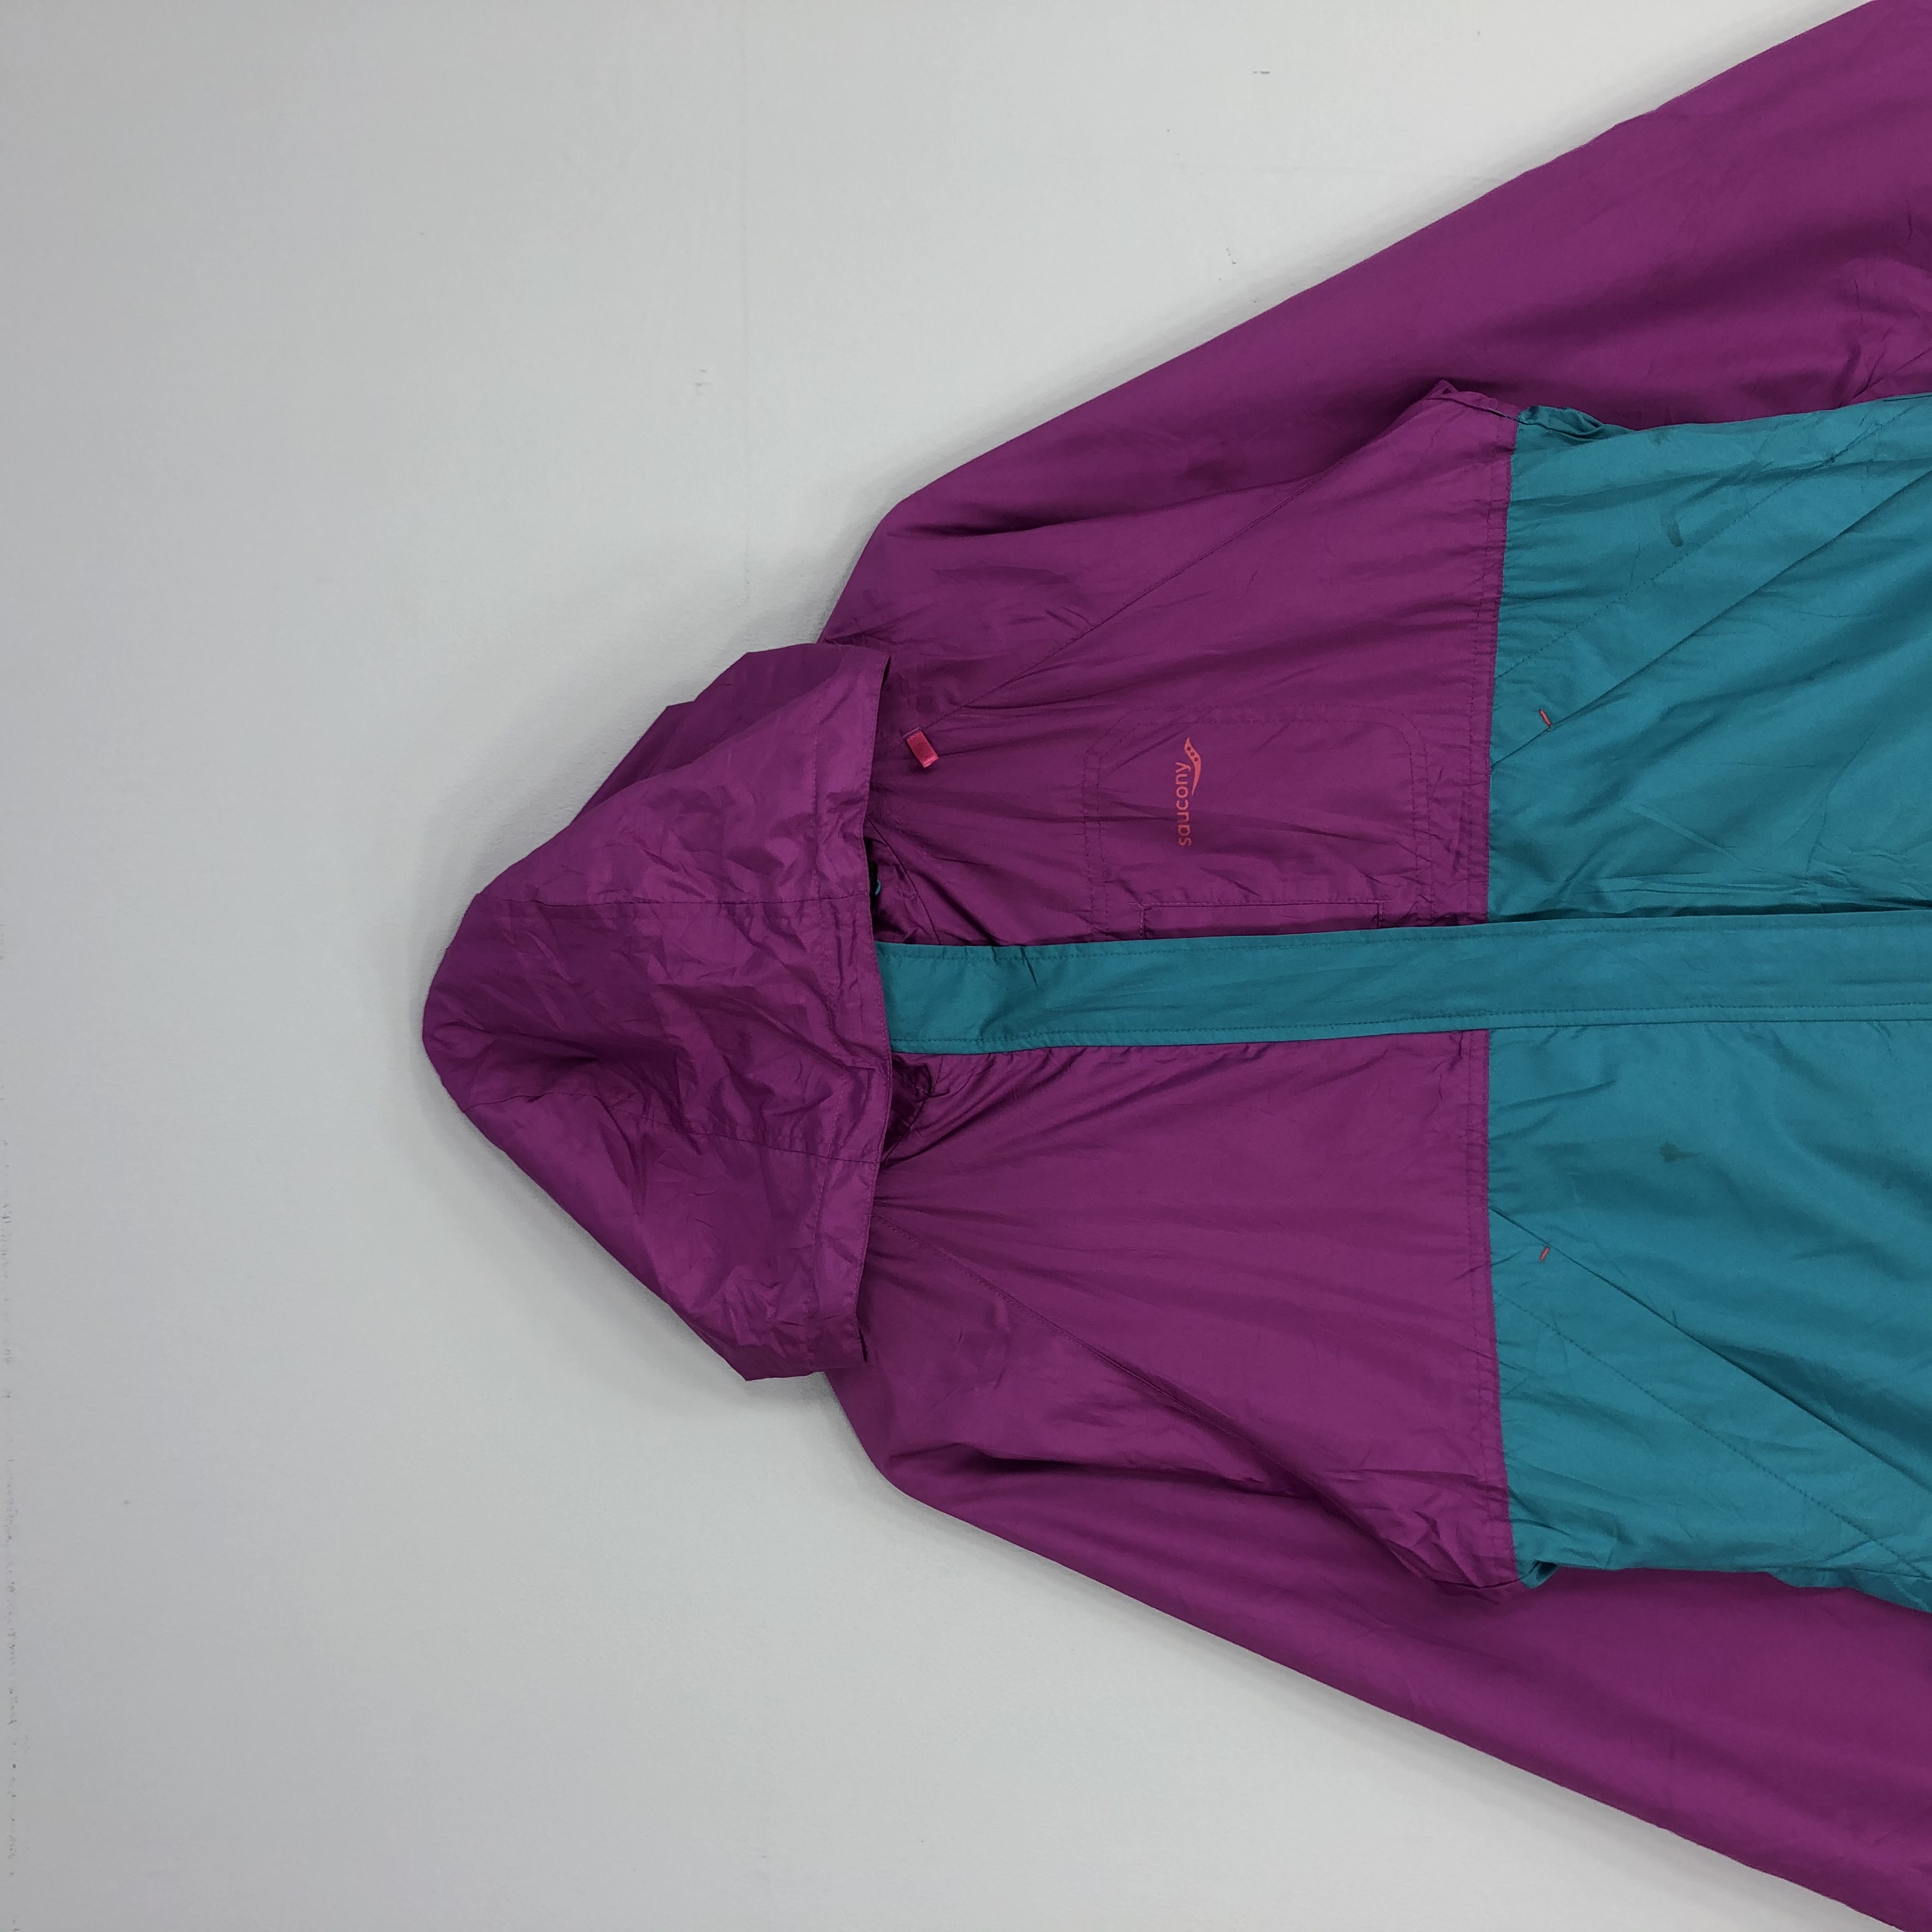 Saucony Zipper Jacket Multicoloured Jacket Large Size - 4